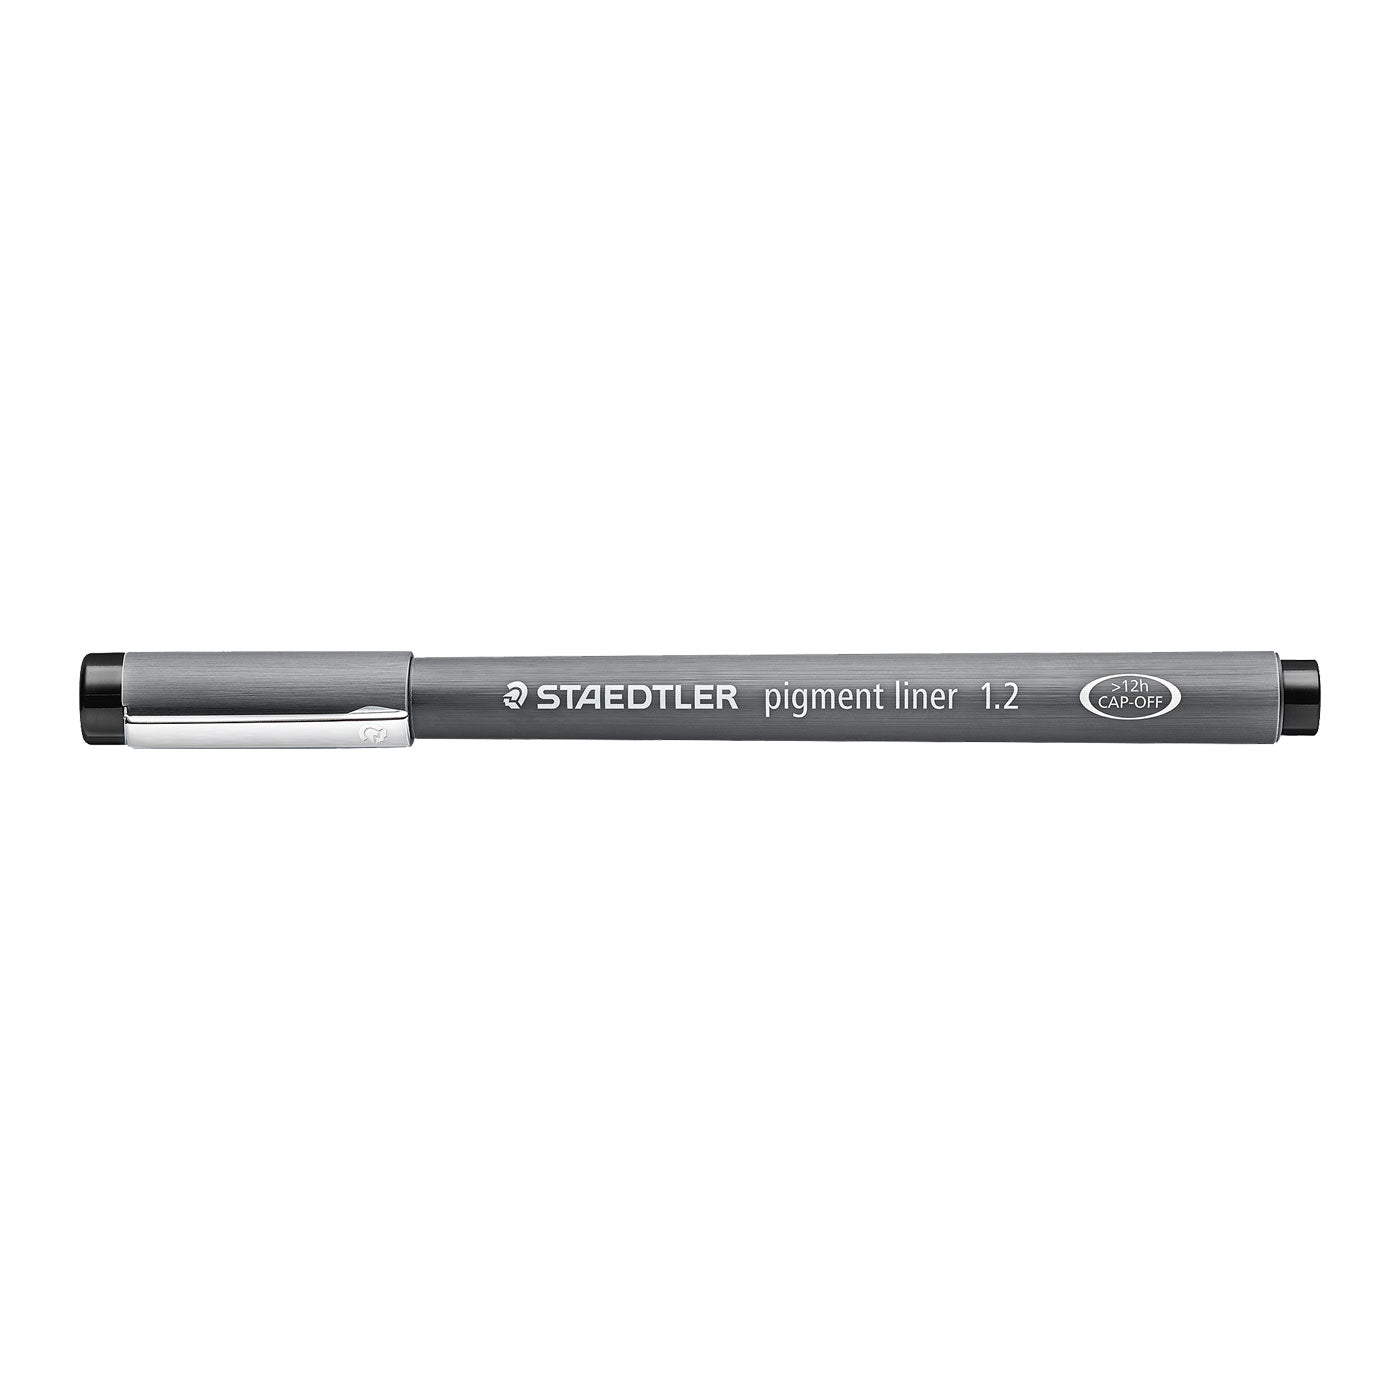 Staedtler Marsgraphic Fineliner Pigment Ink Pen Black 1.2mm